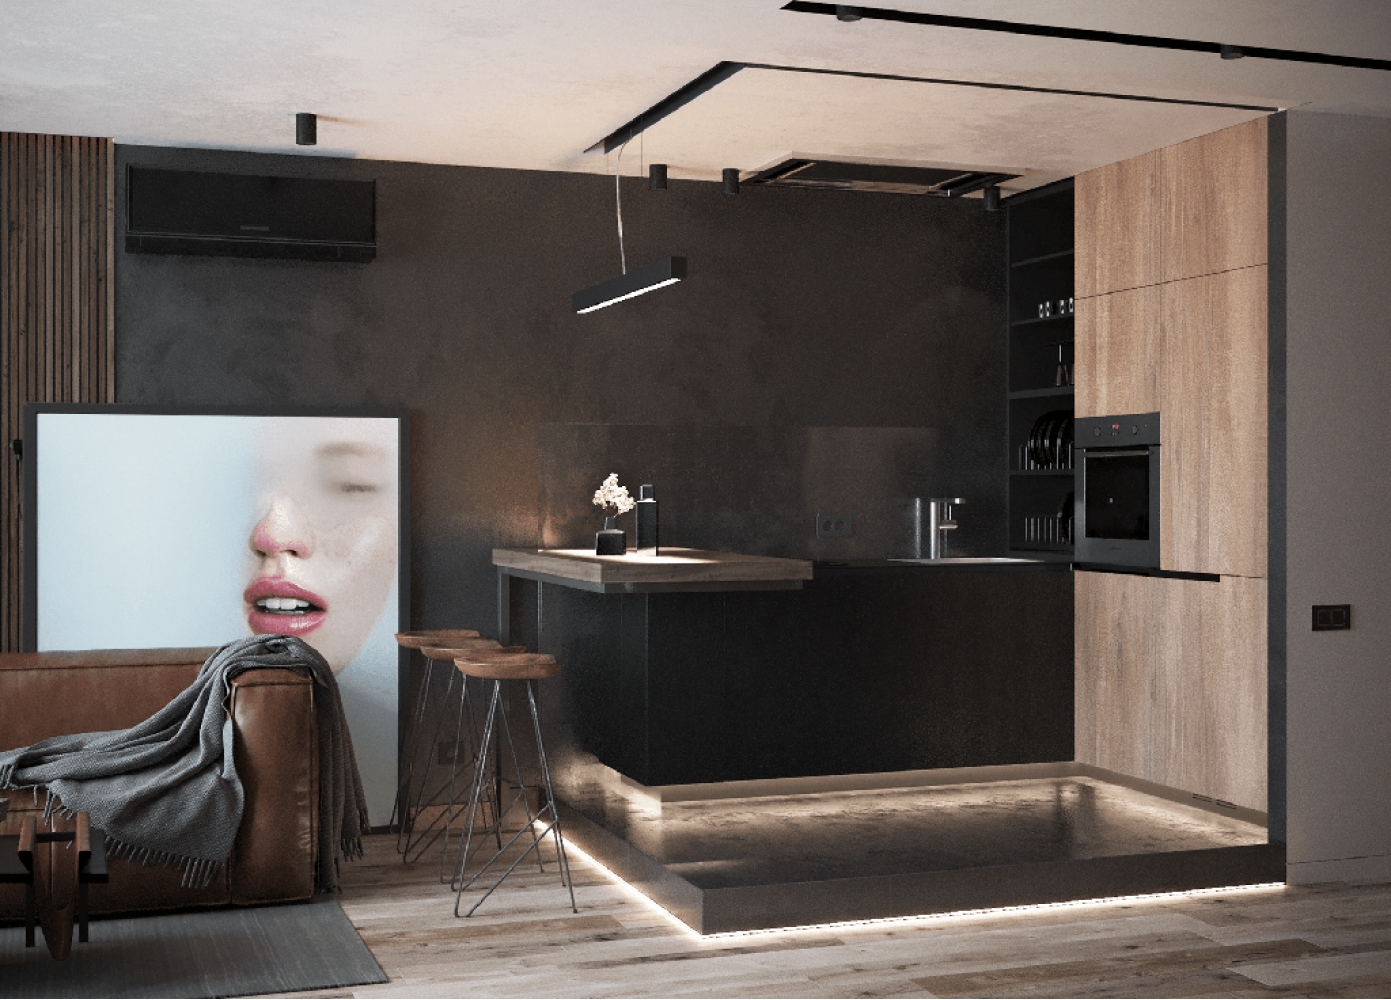 Кухня — Дизайн-проект квартиры в ЖК Династия, 54м.кв — дизайнер Дарья Гросс